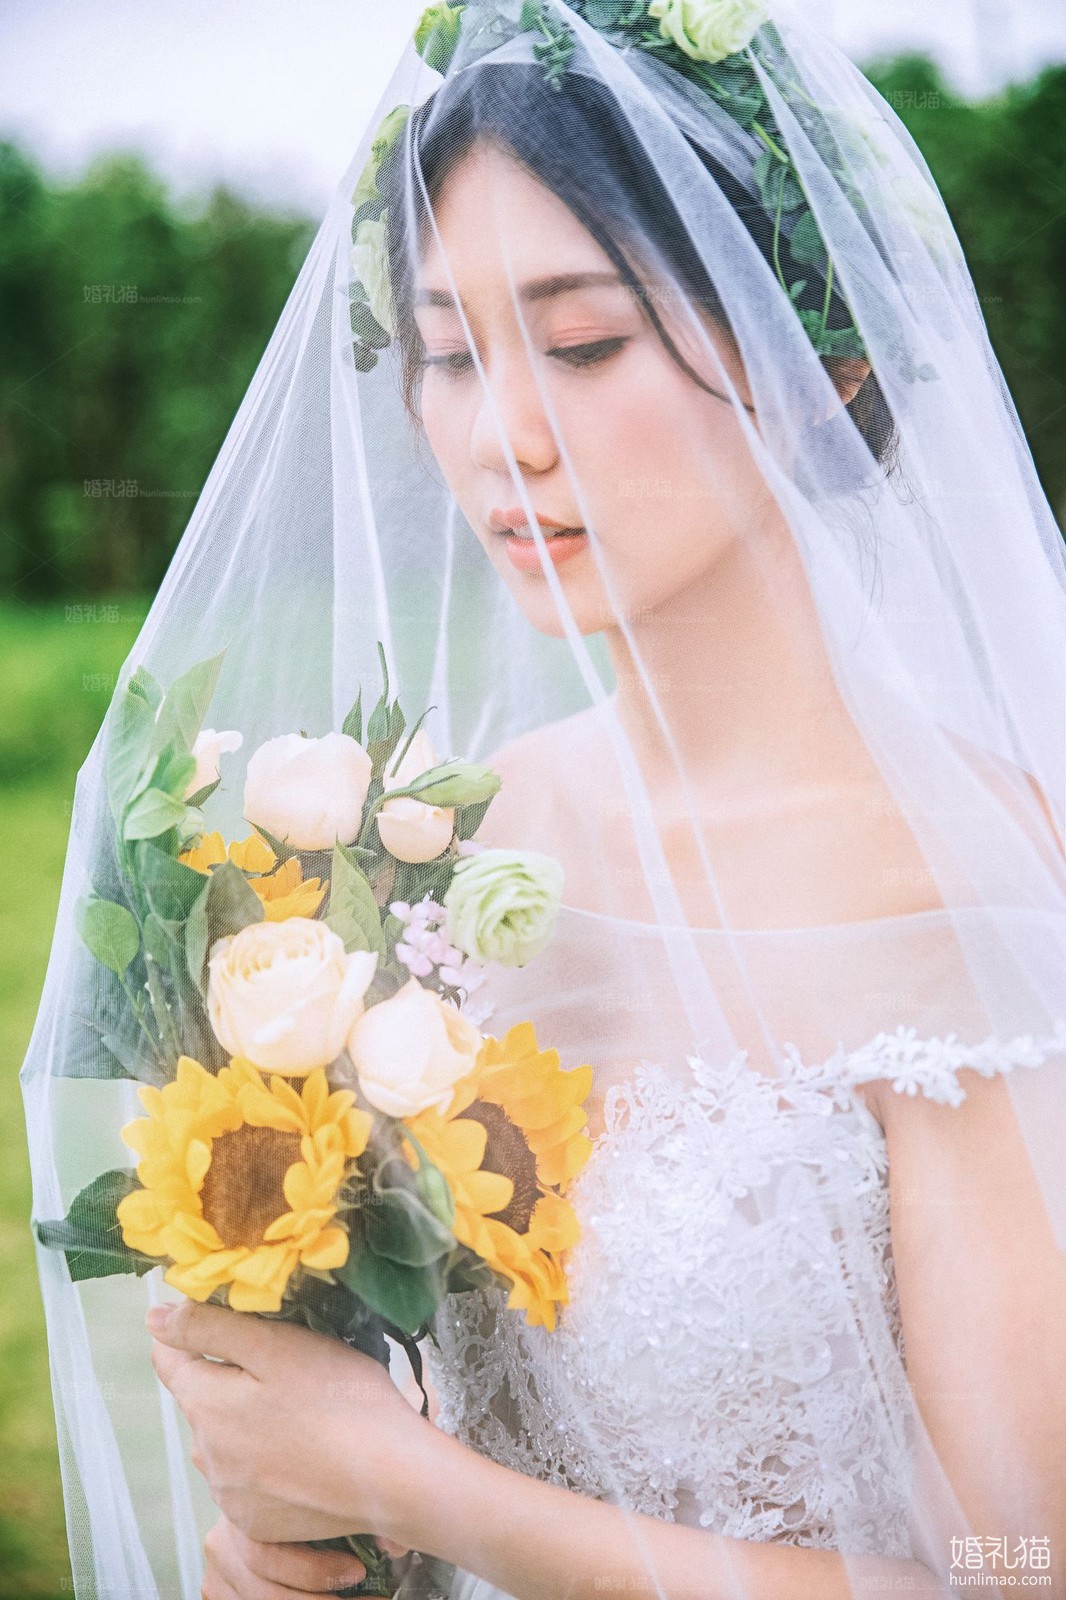 2019年7月广州婚纱照,,广州婚纱照,婚纱照图片